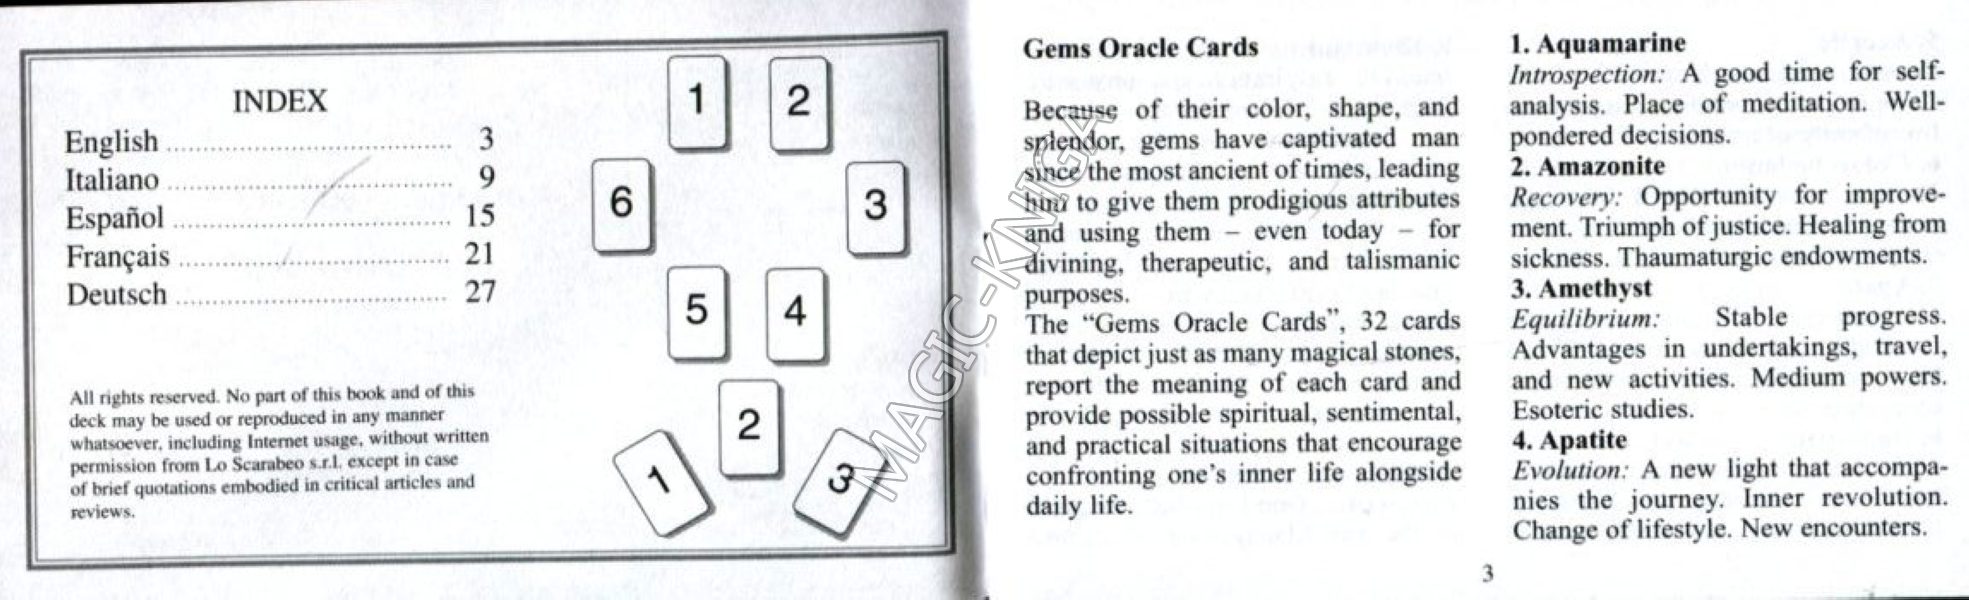 Оракул Драгоценных Камней (Gems Oracle Cards) %% 